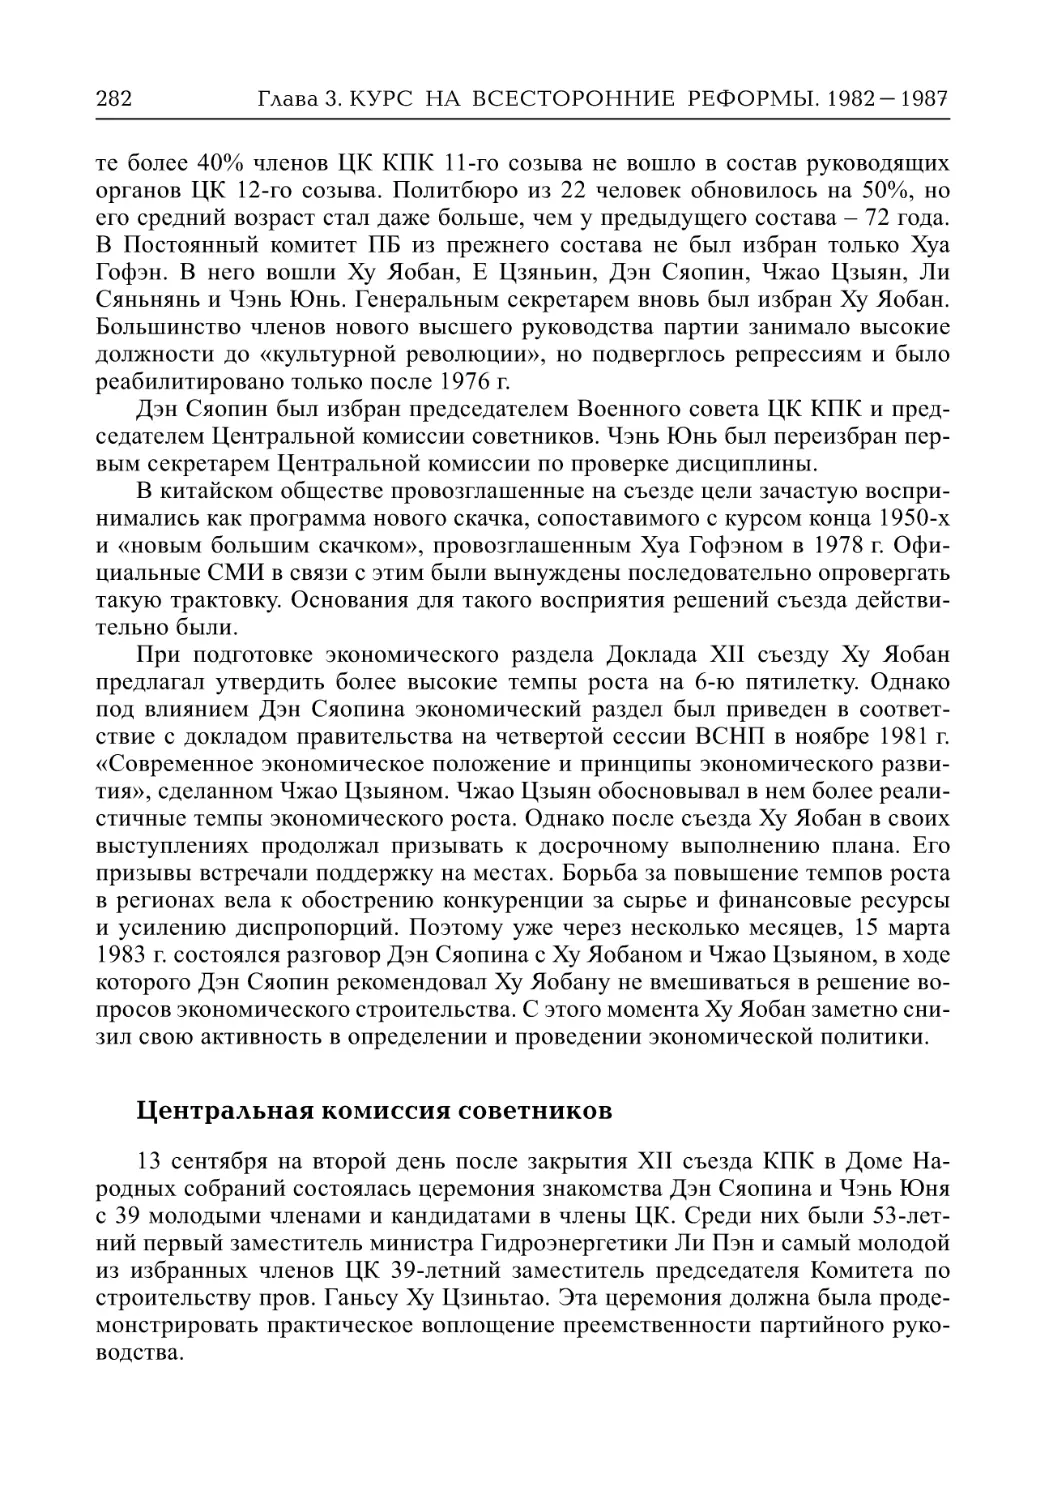 Центральная комиссия советников (А.В. Виноградов)